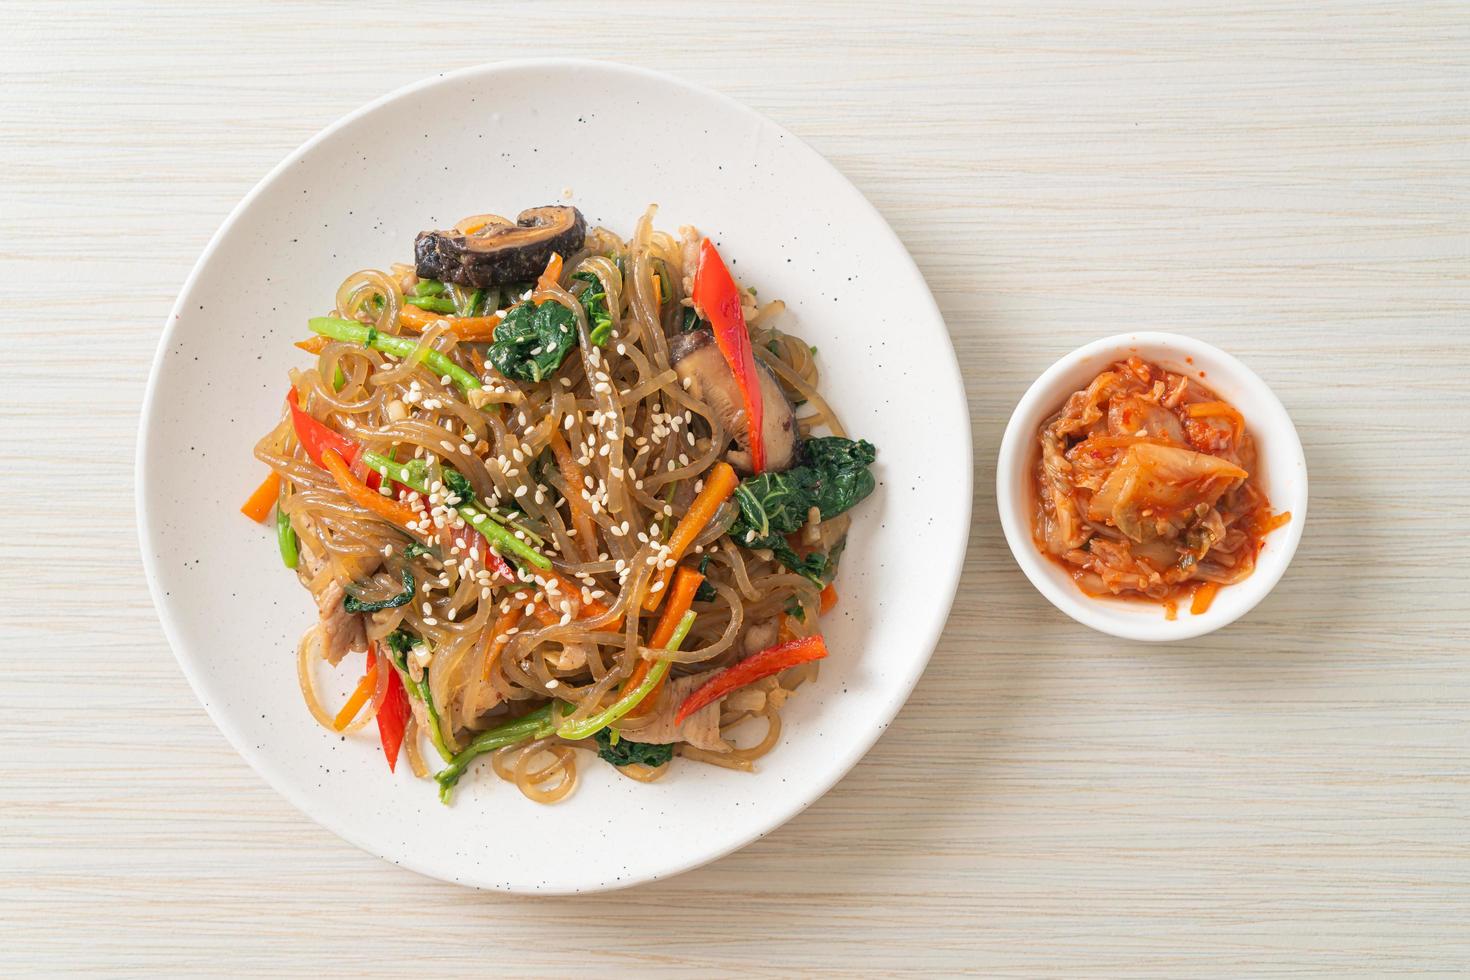 nouilles japchae ou vermicelles coréennes sautées aux légumes et au porc garnies de sésame blanc photo